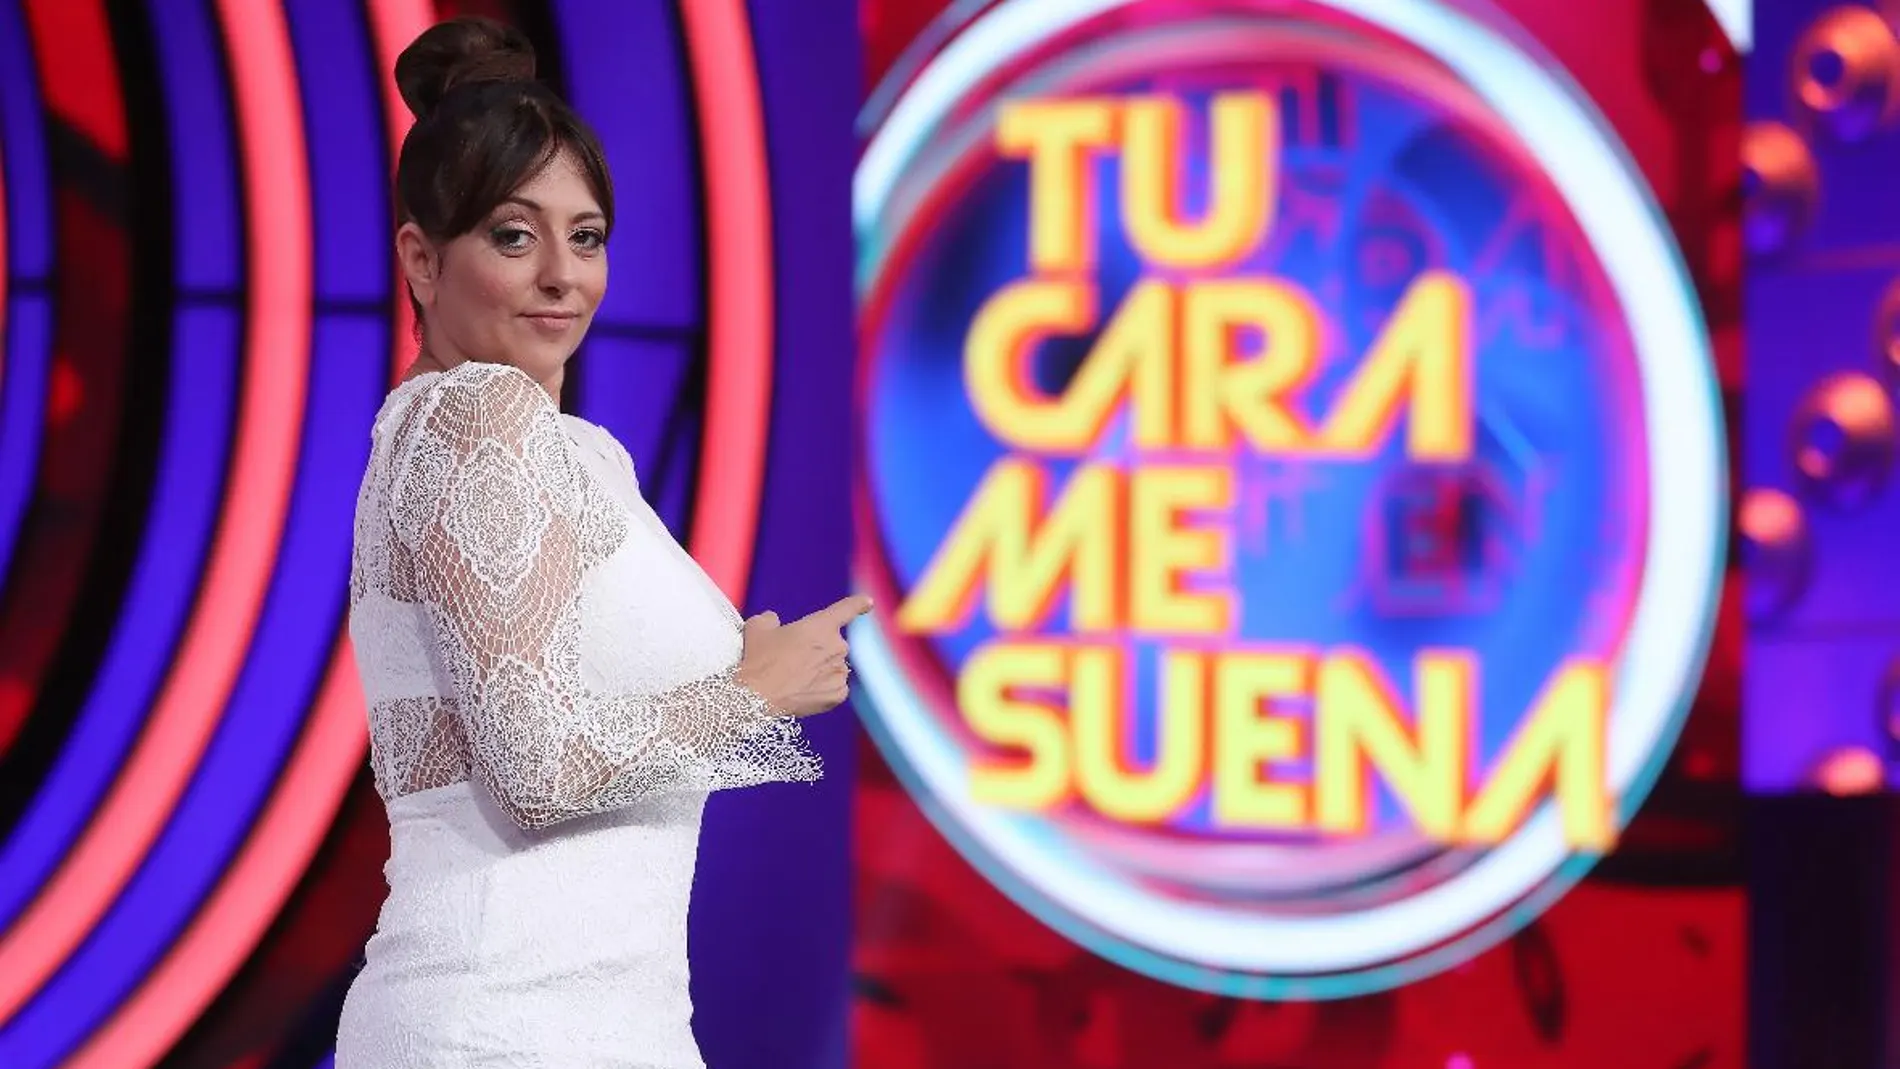 Recordando a Yolanda Ramos, concursante de la quinta temporada de ‘Tu cara me suena’